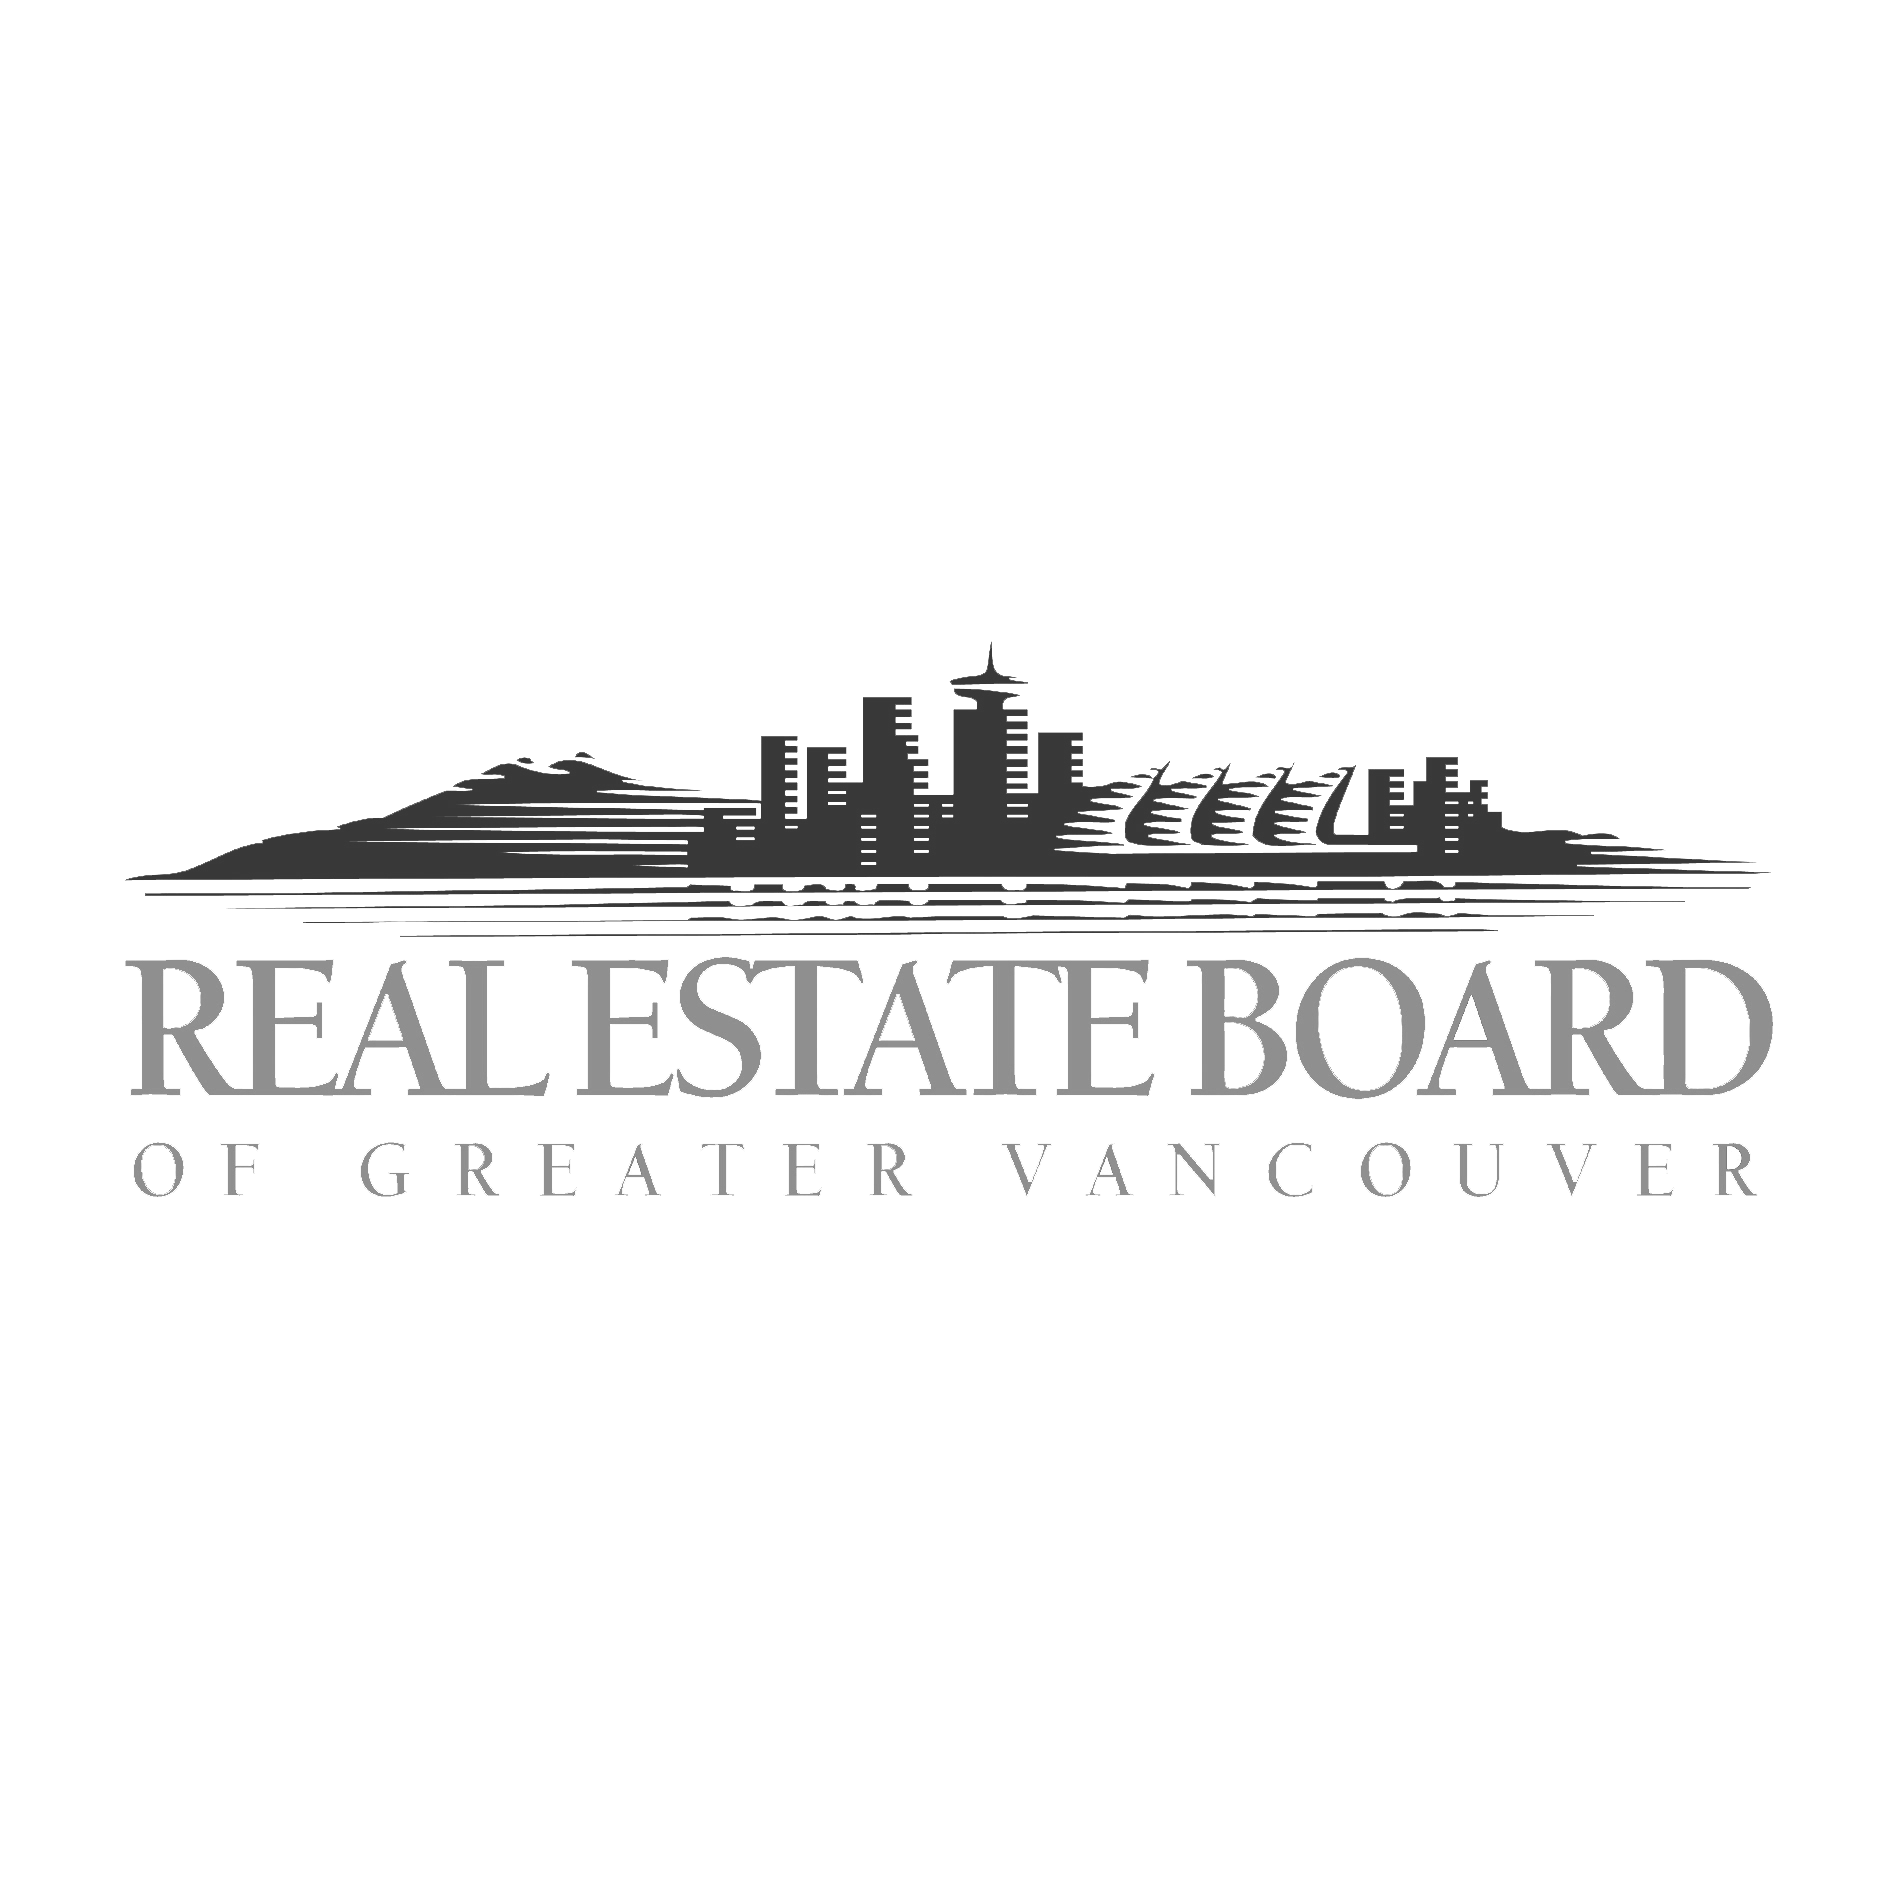 Real estate board